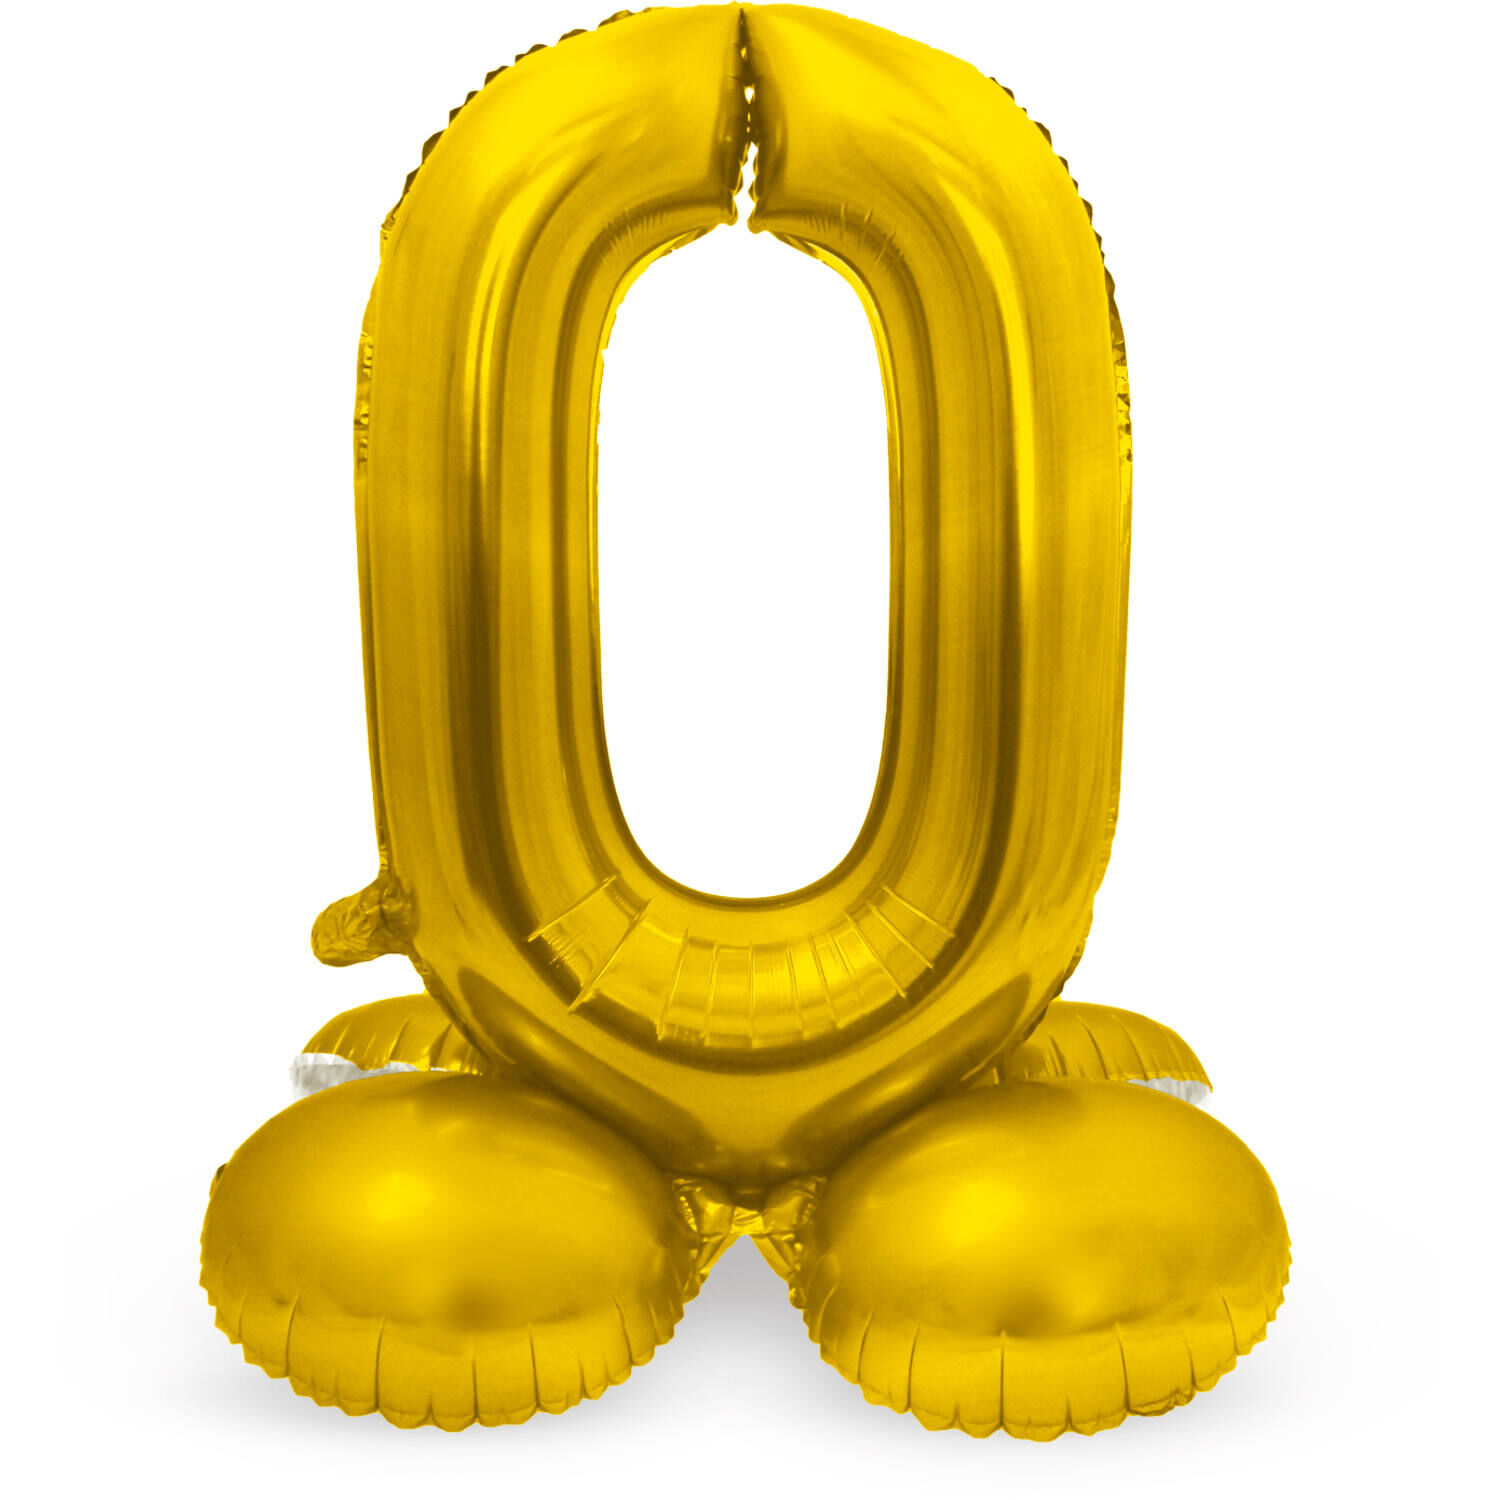 NEU Folienballon Groe Zahl 0, mit Standfu, Gold, ca. 72cm, Zahlenballon